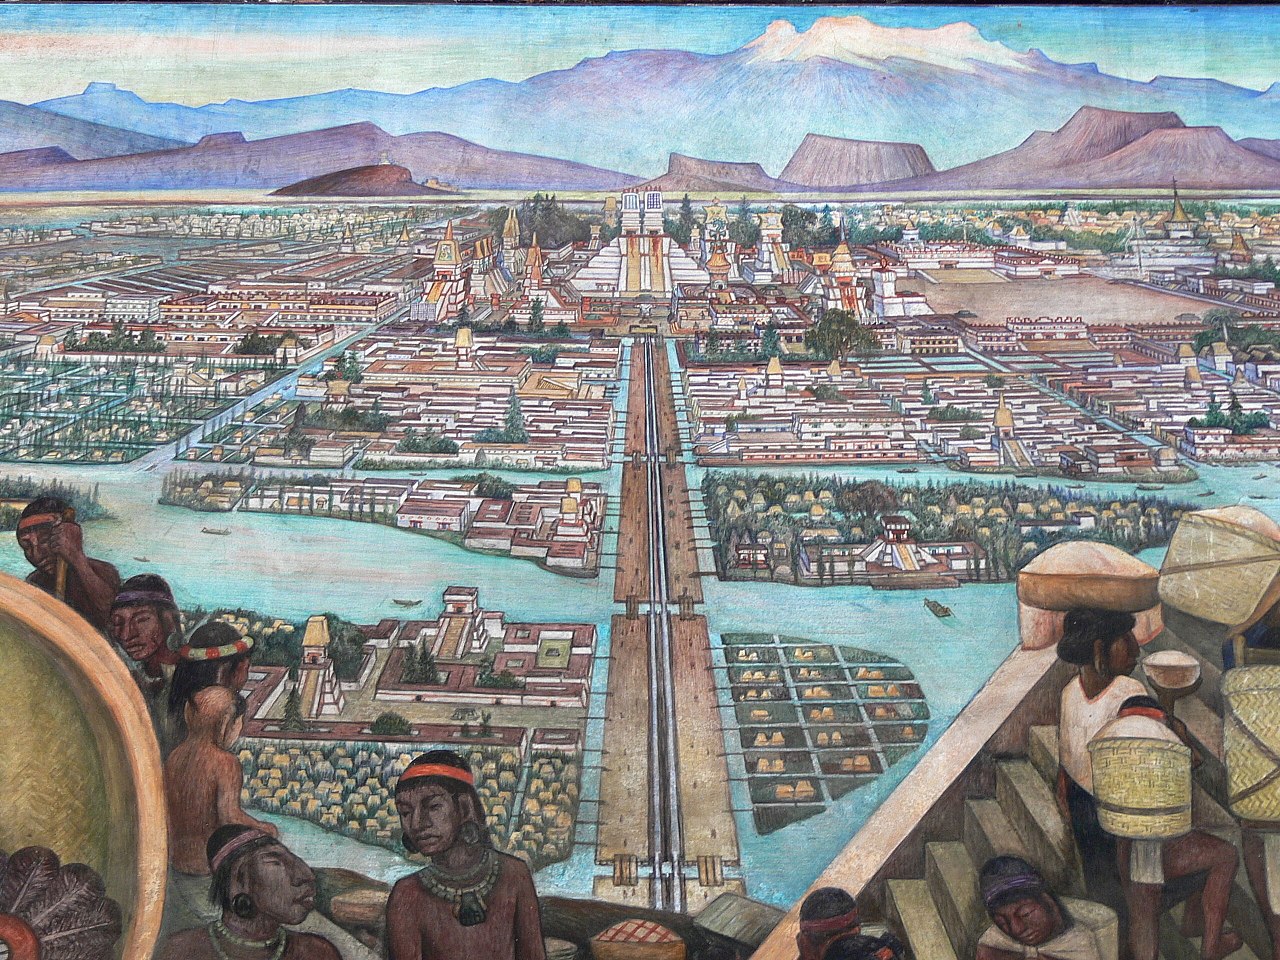 La gran Tenochtitlán, mural de Diego Rivera en el que se observan algunas chinampas en los costados de la calzada que lleva al centro de la ciudad.